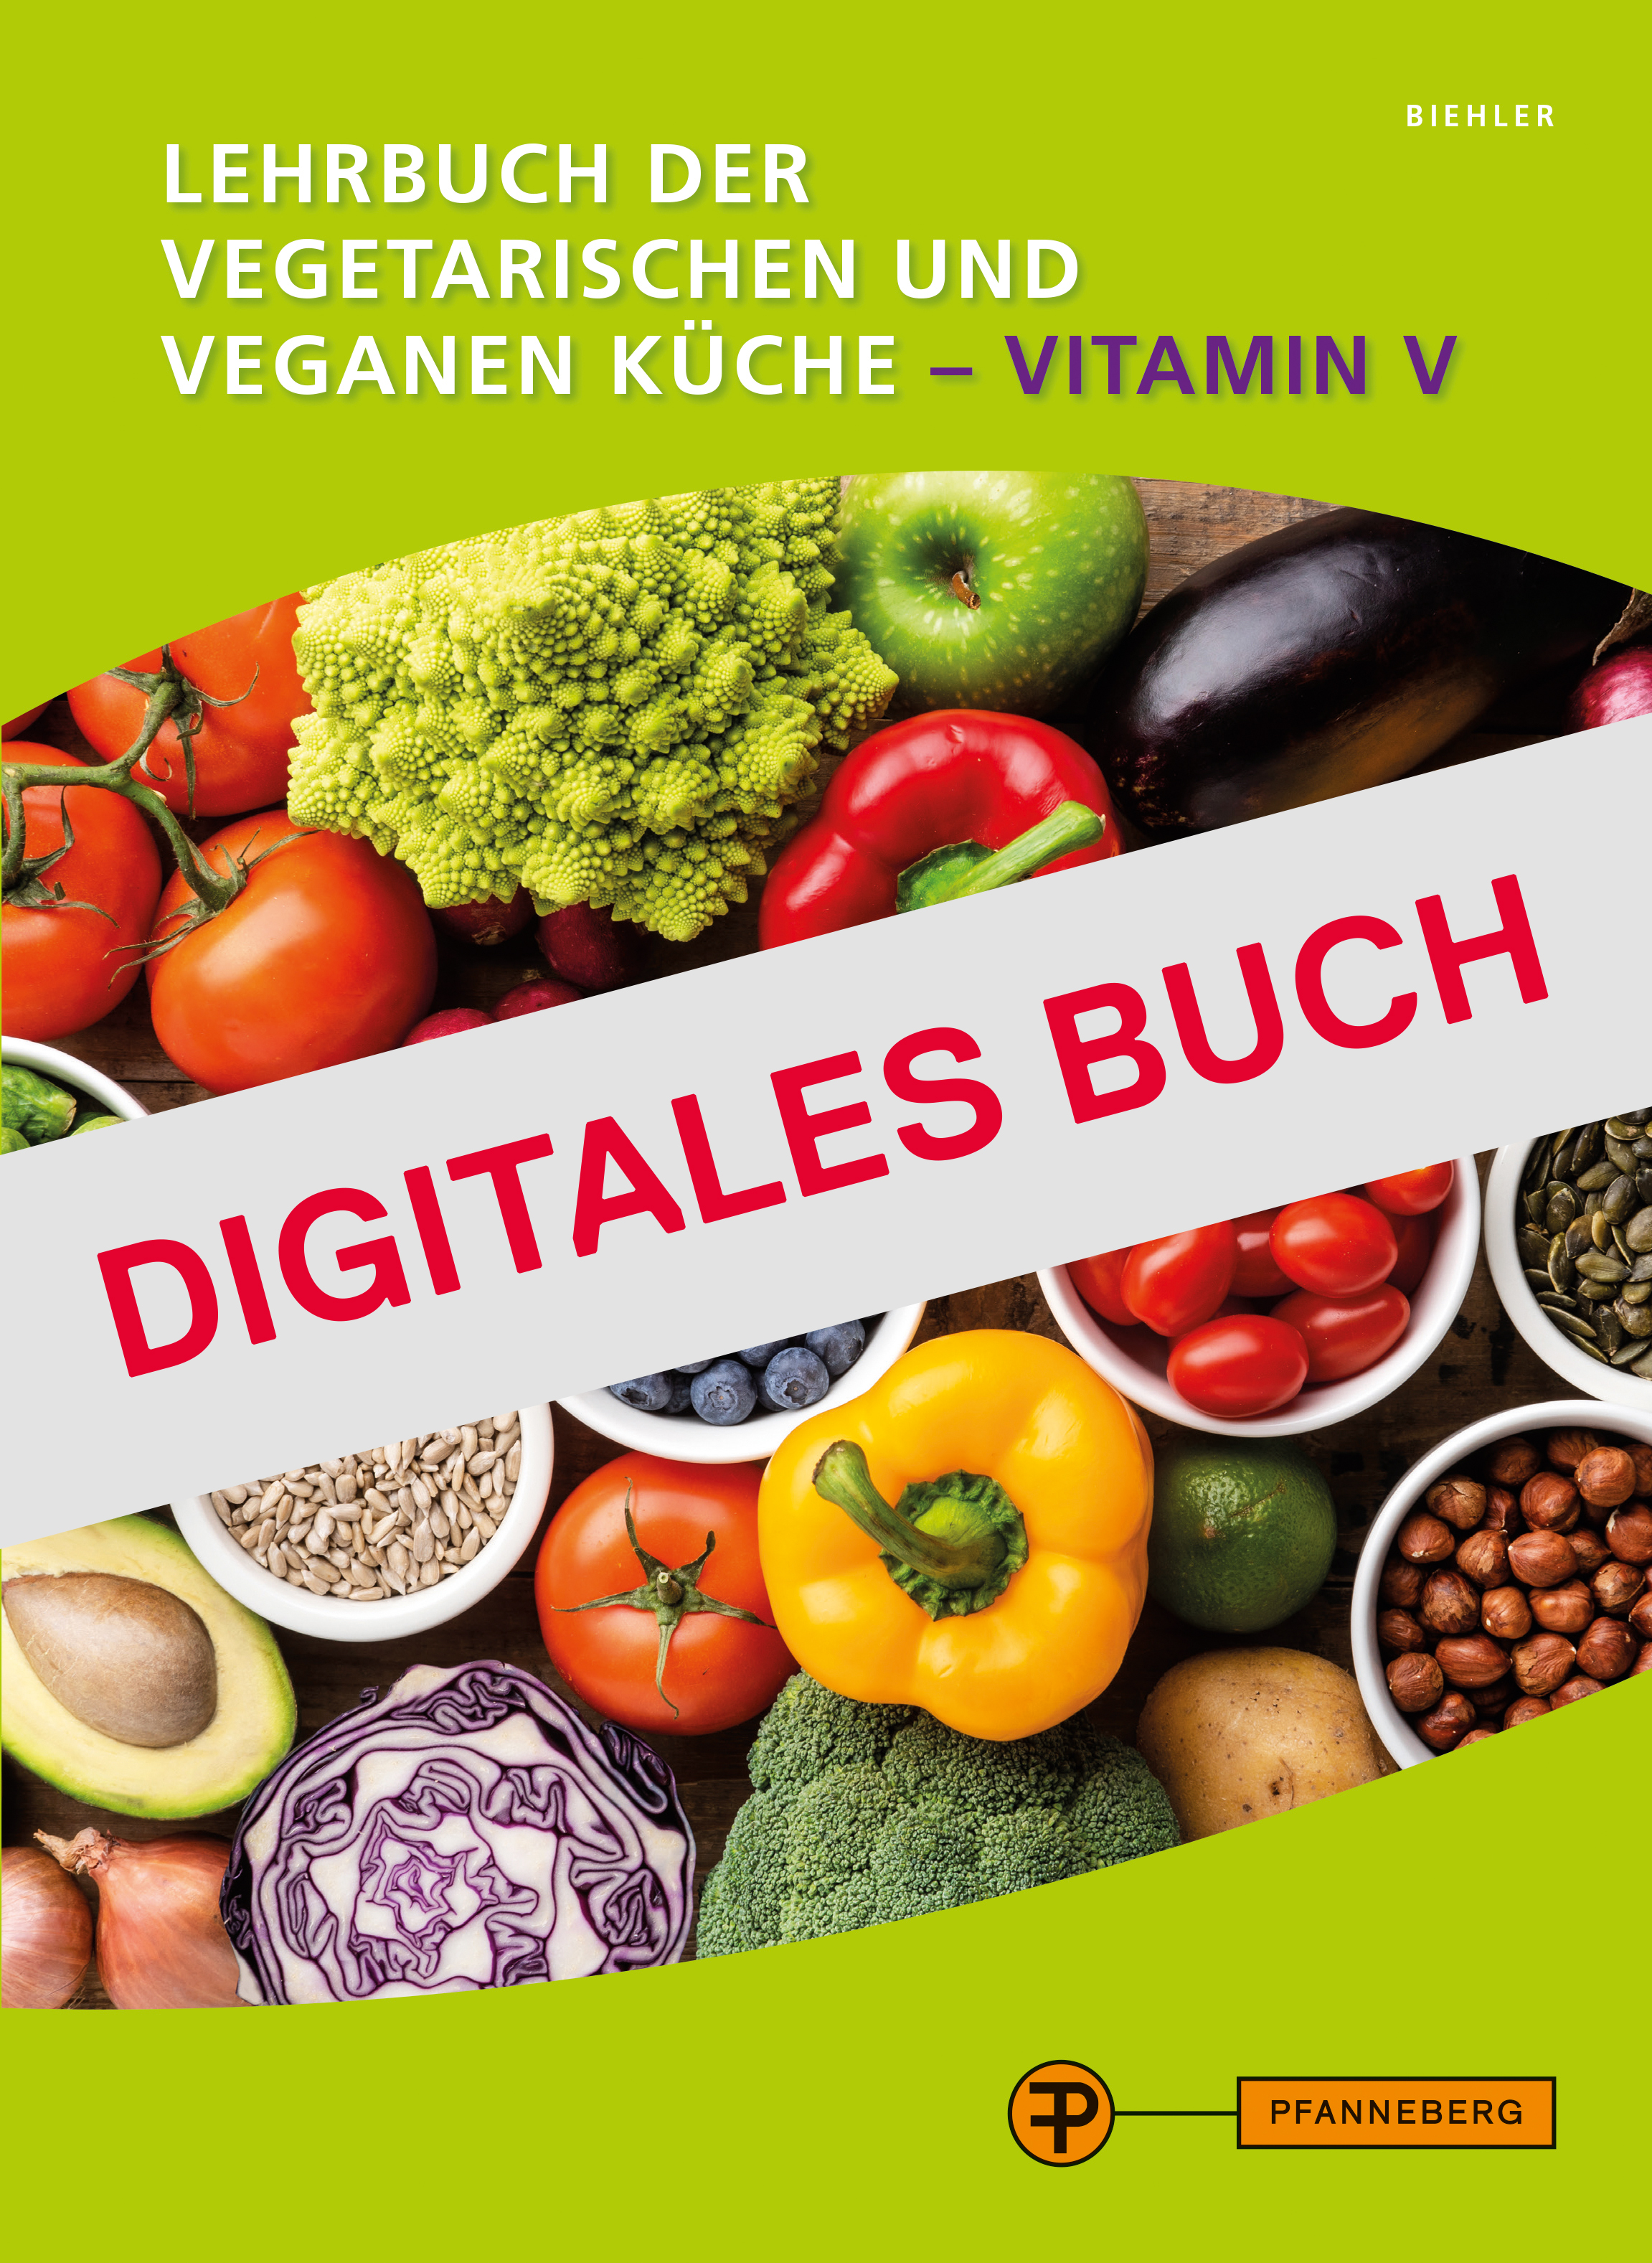 Lehrbuch der vegetarischen und veganen Küche - Vitamin V - Digitales Buch